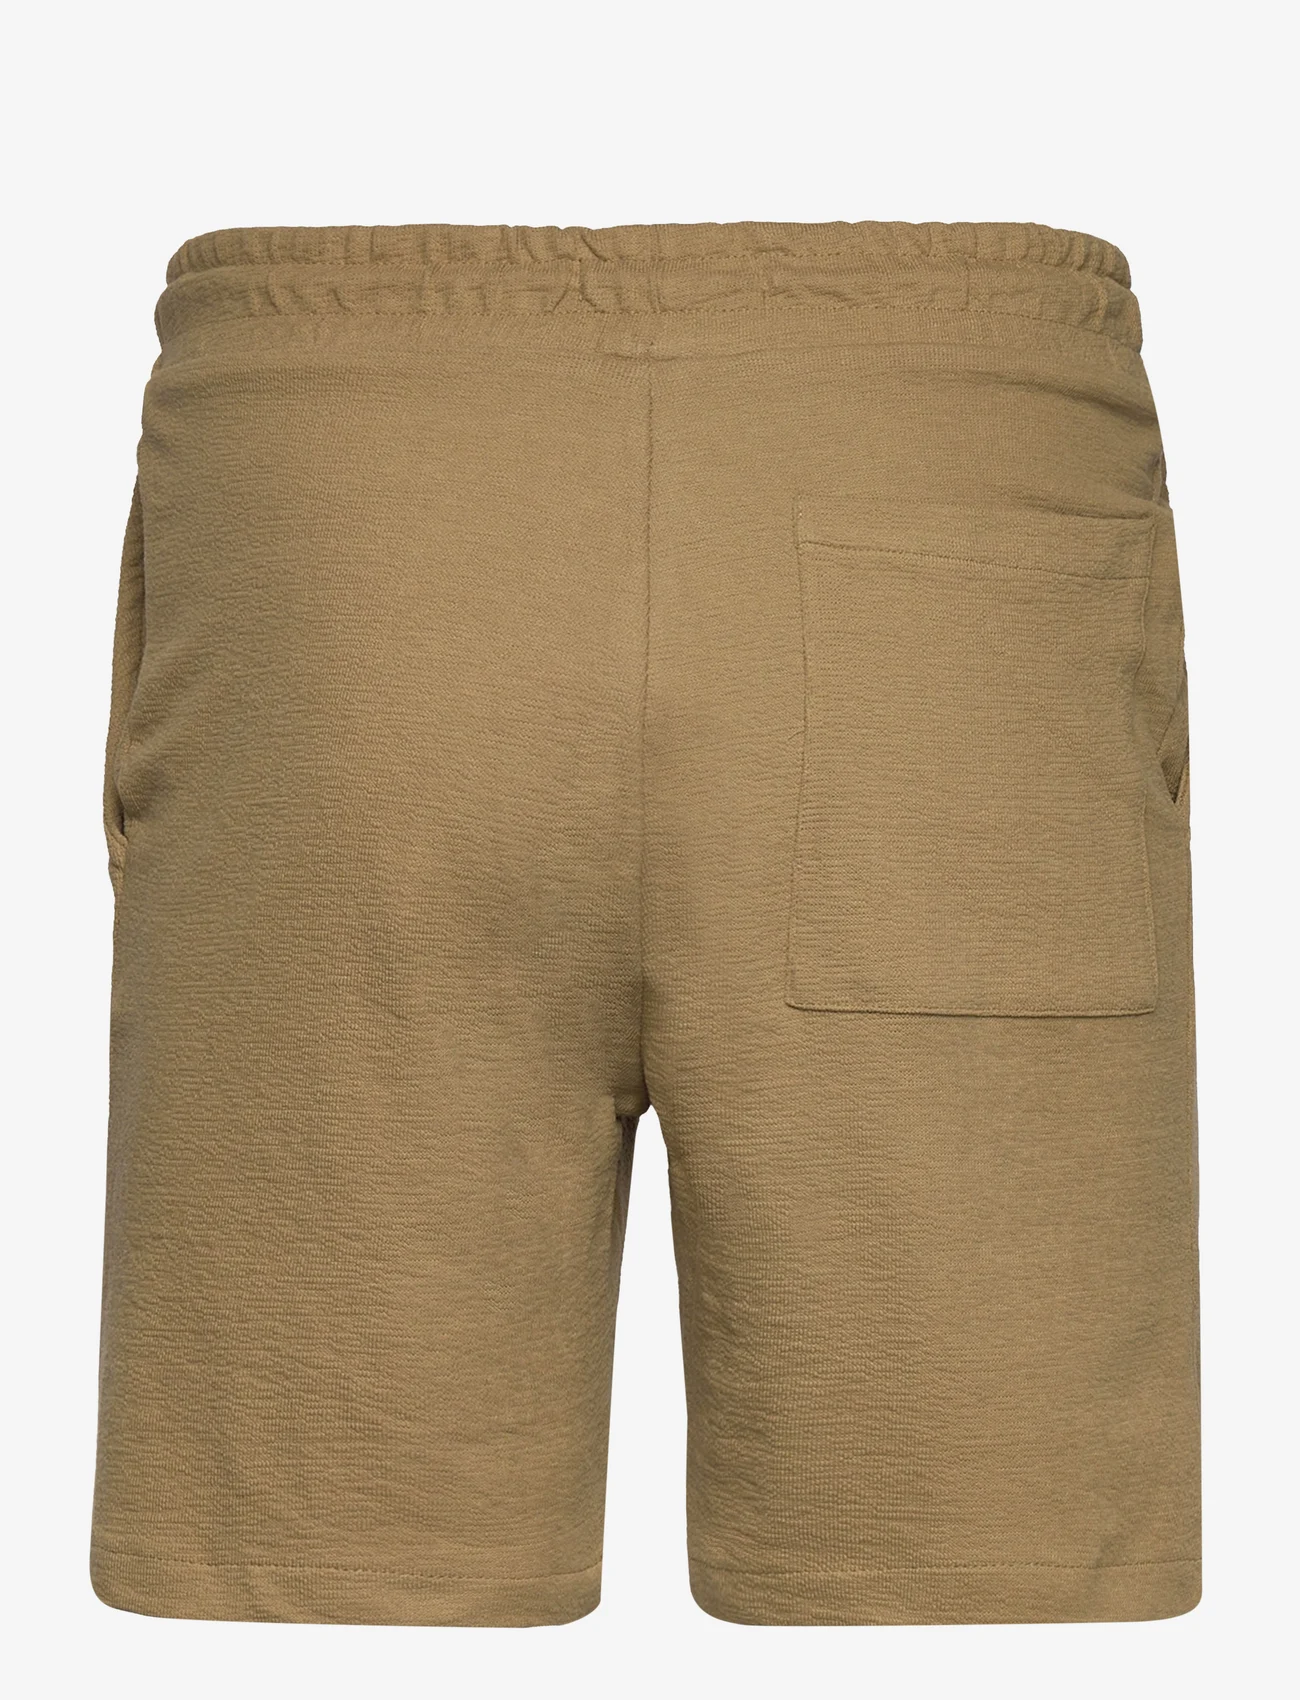 Clean Cut Copenhagen - Calton Structured Shorts - herren - dark khaki - 1